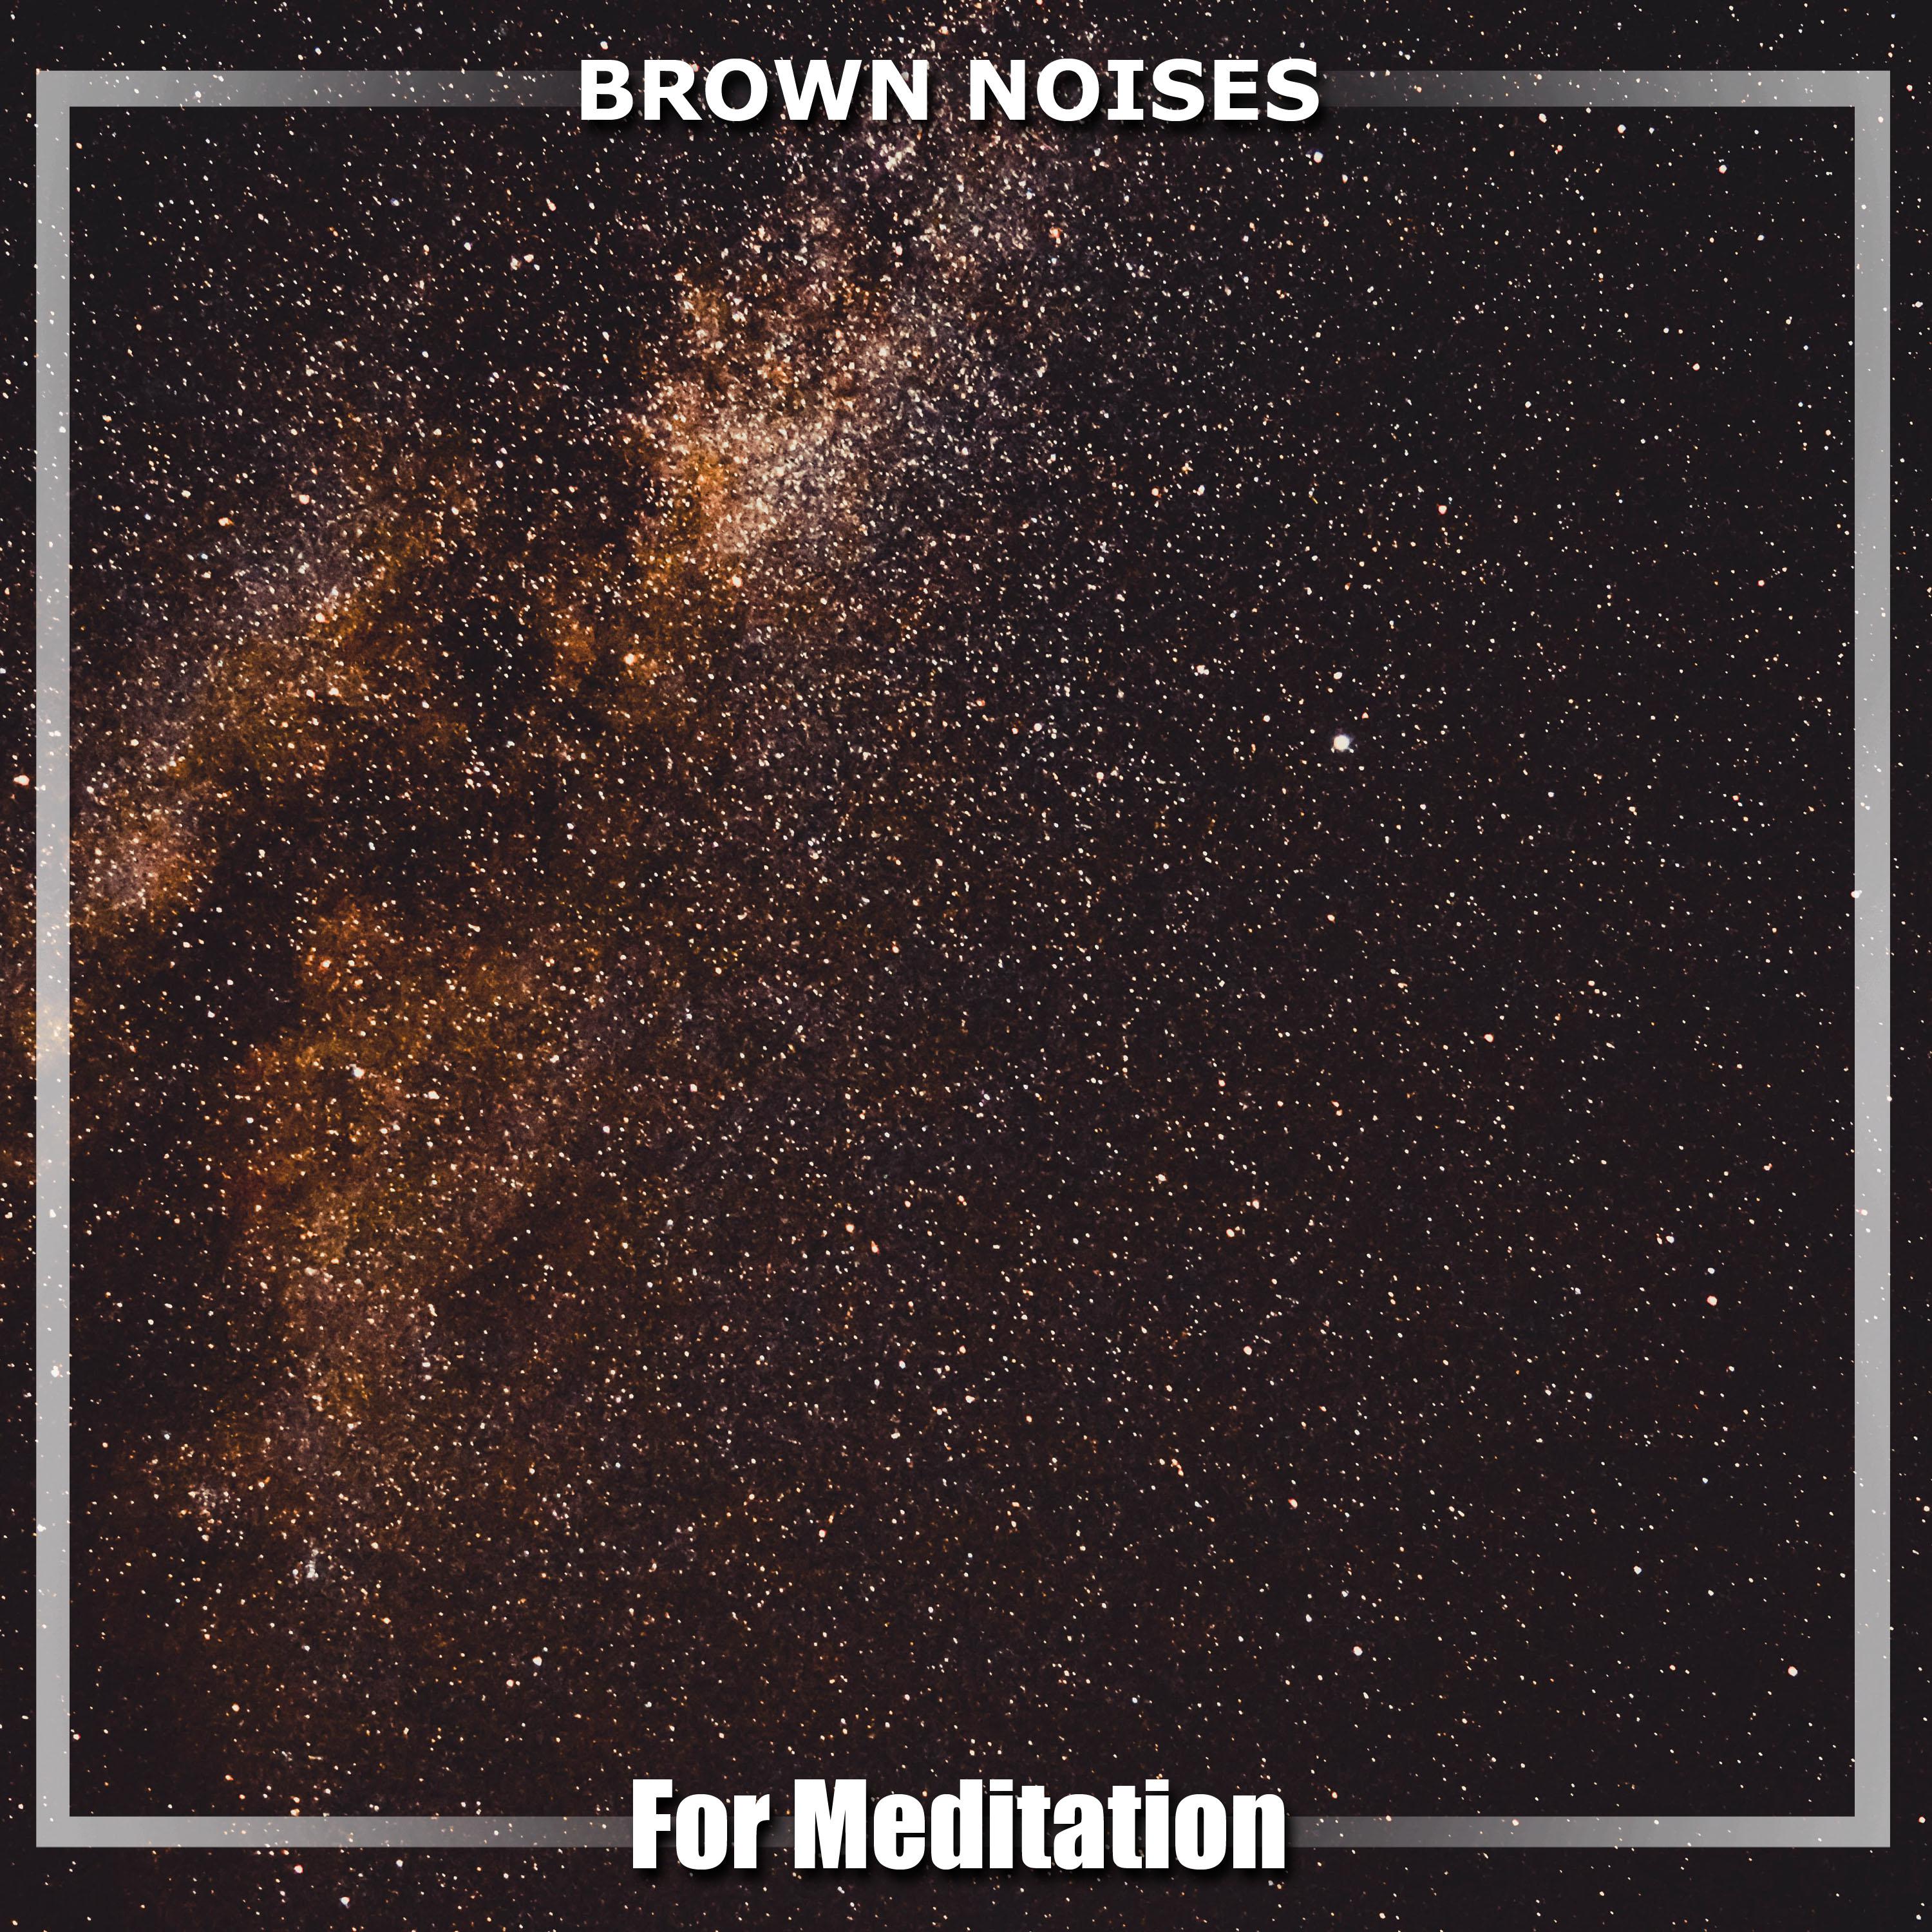 12 Brown Noises for Meditation